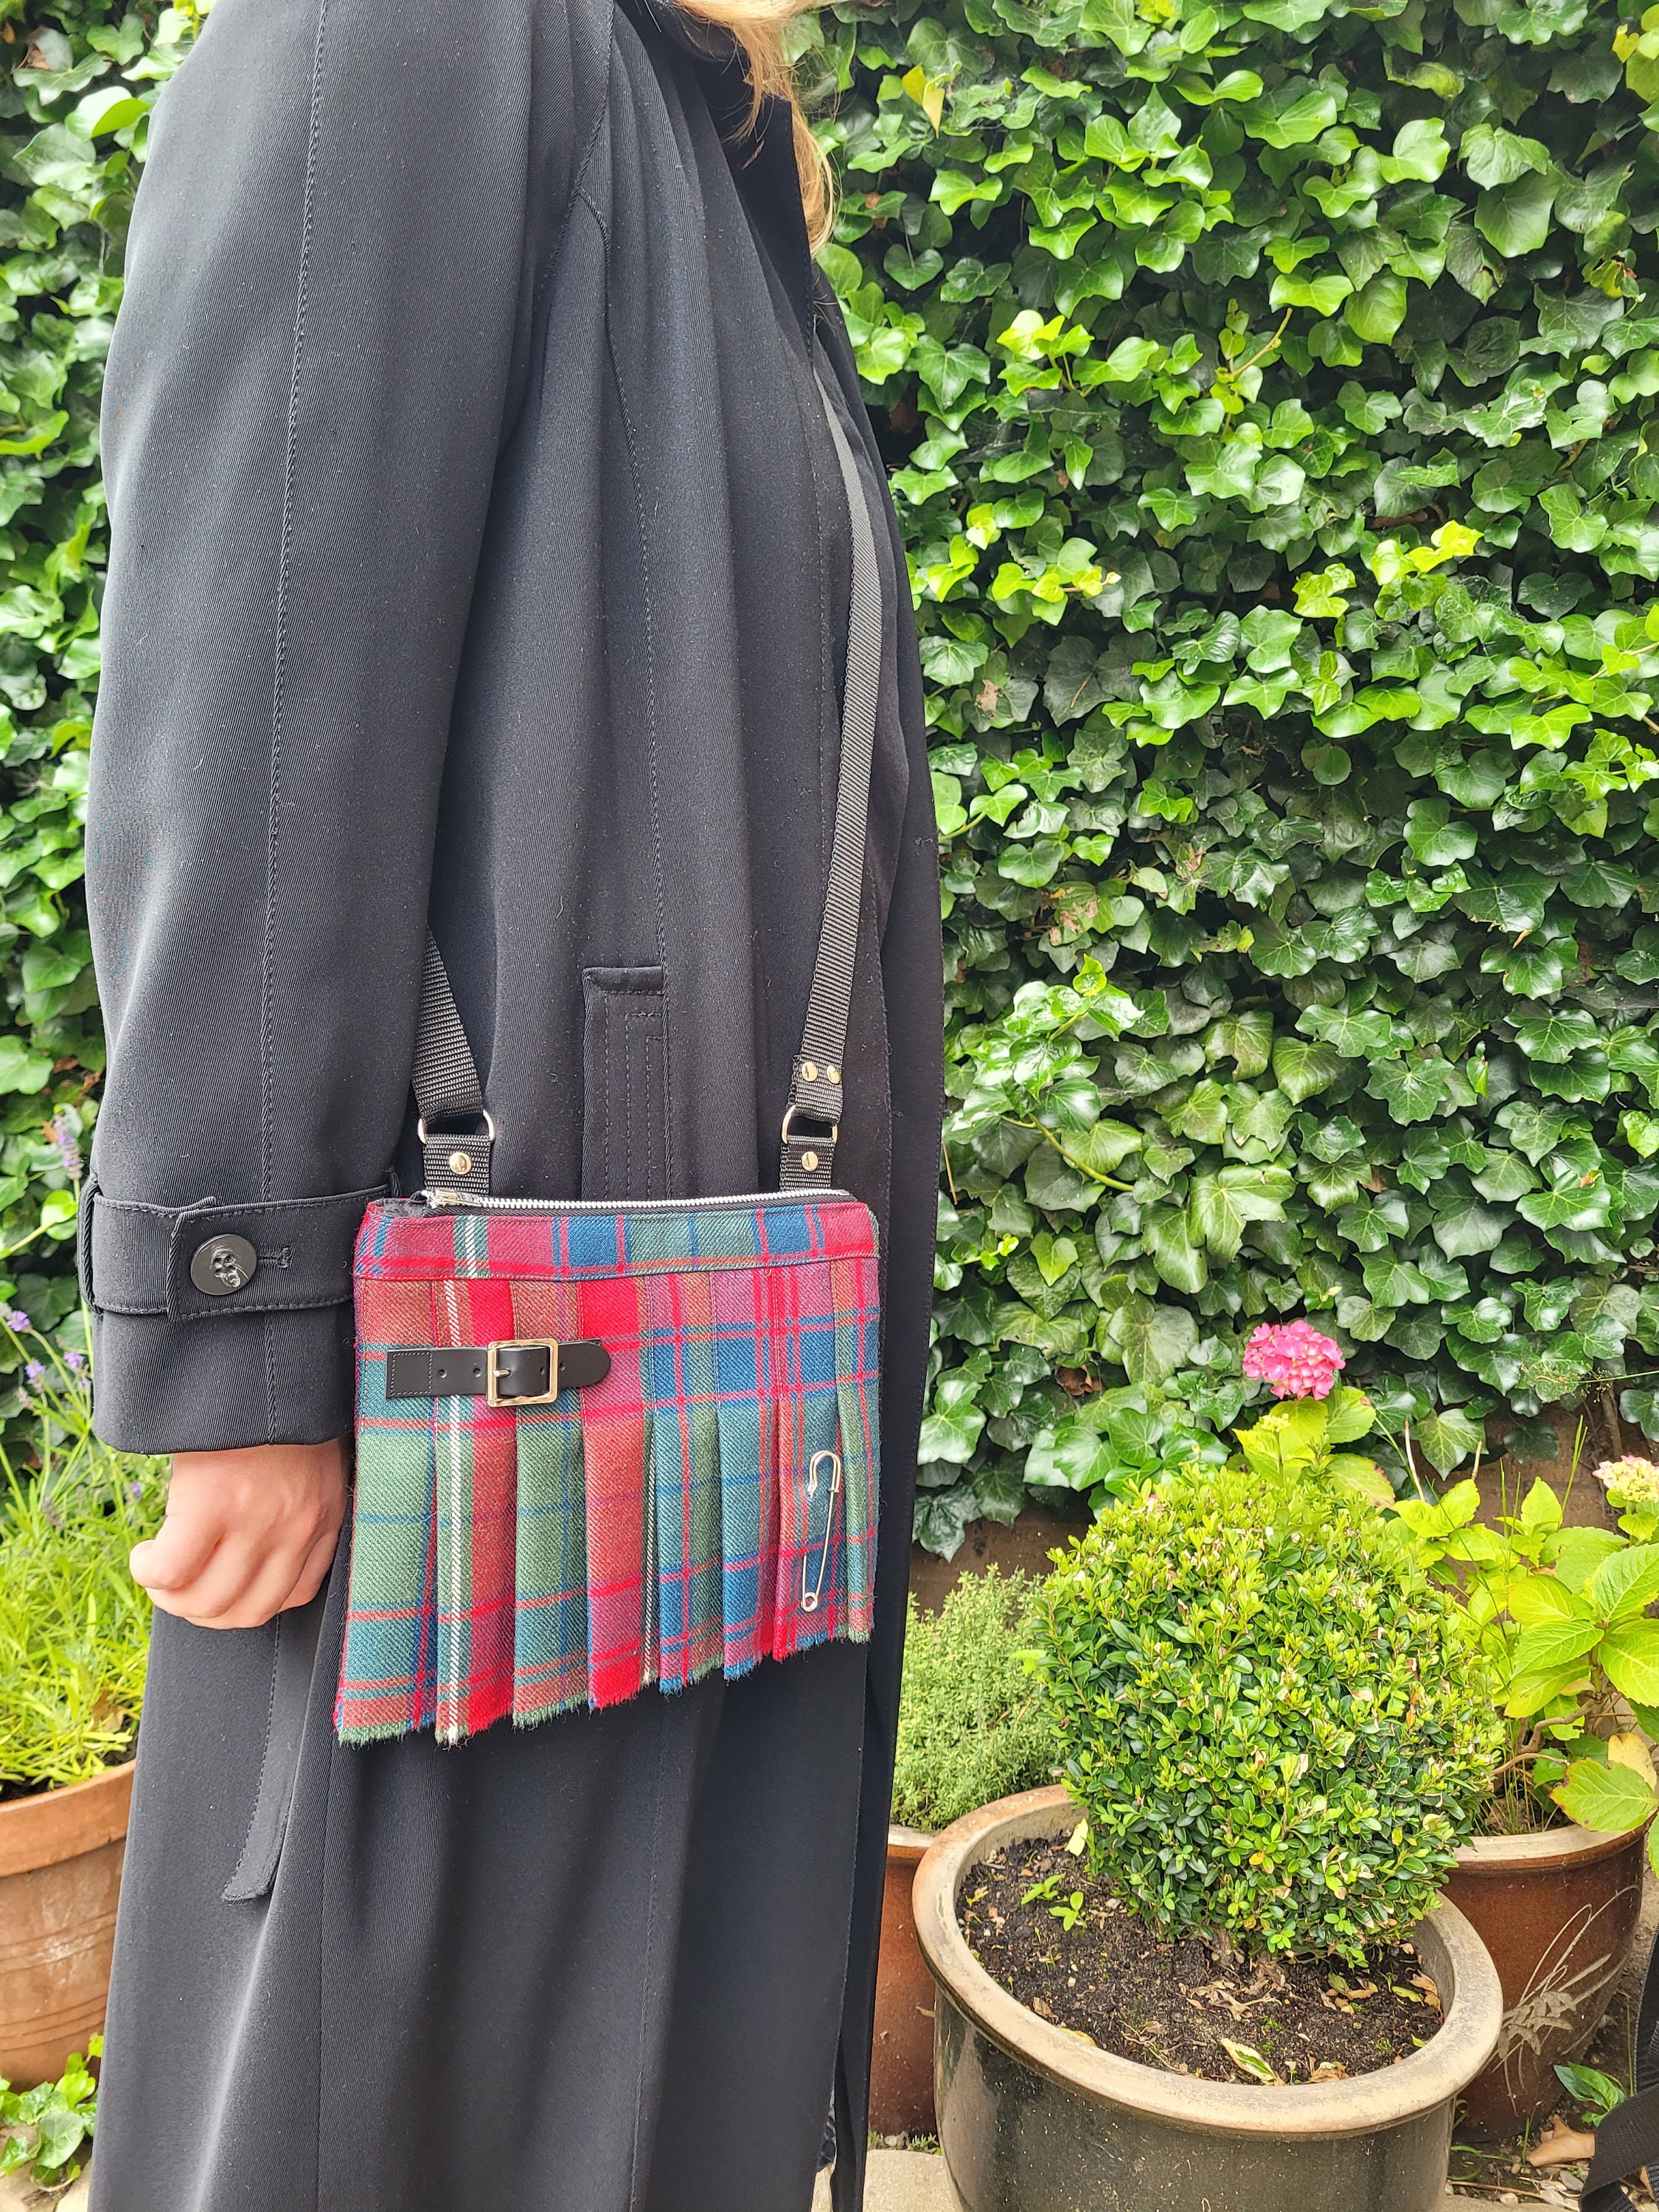 CLN Sling/belt bag, Women's Fashion, Bags & Wallets, Cross-body